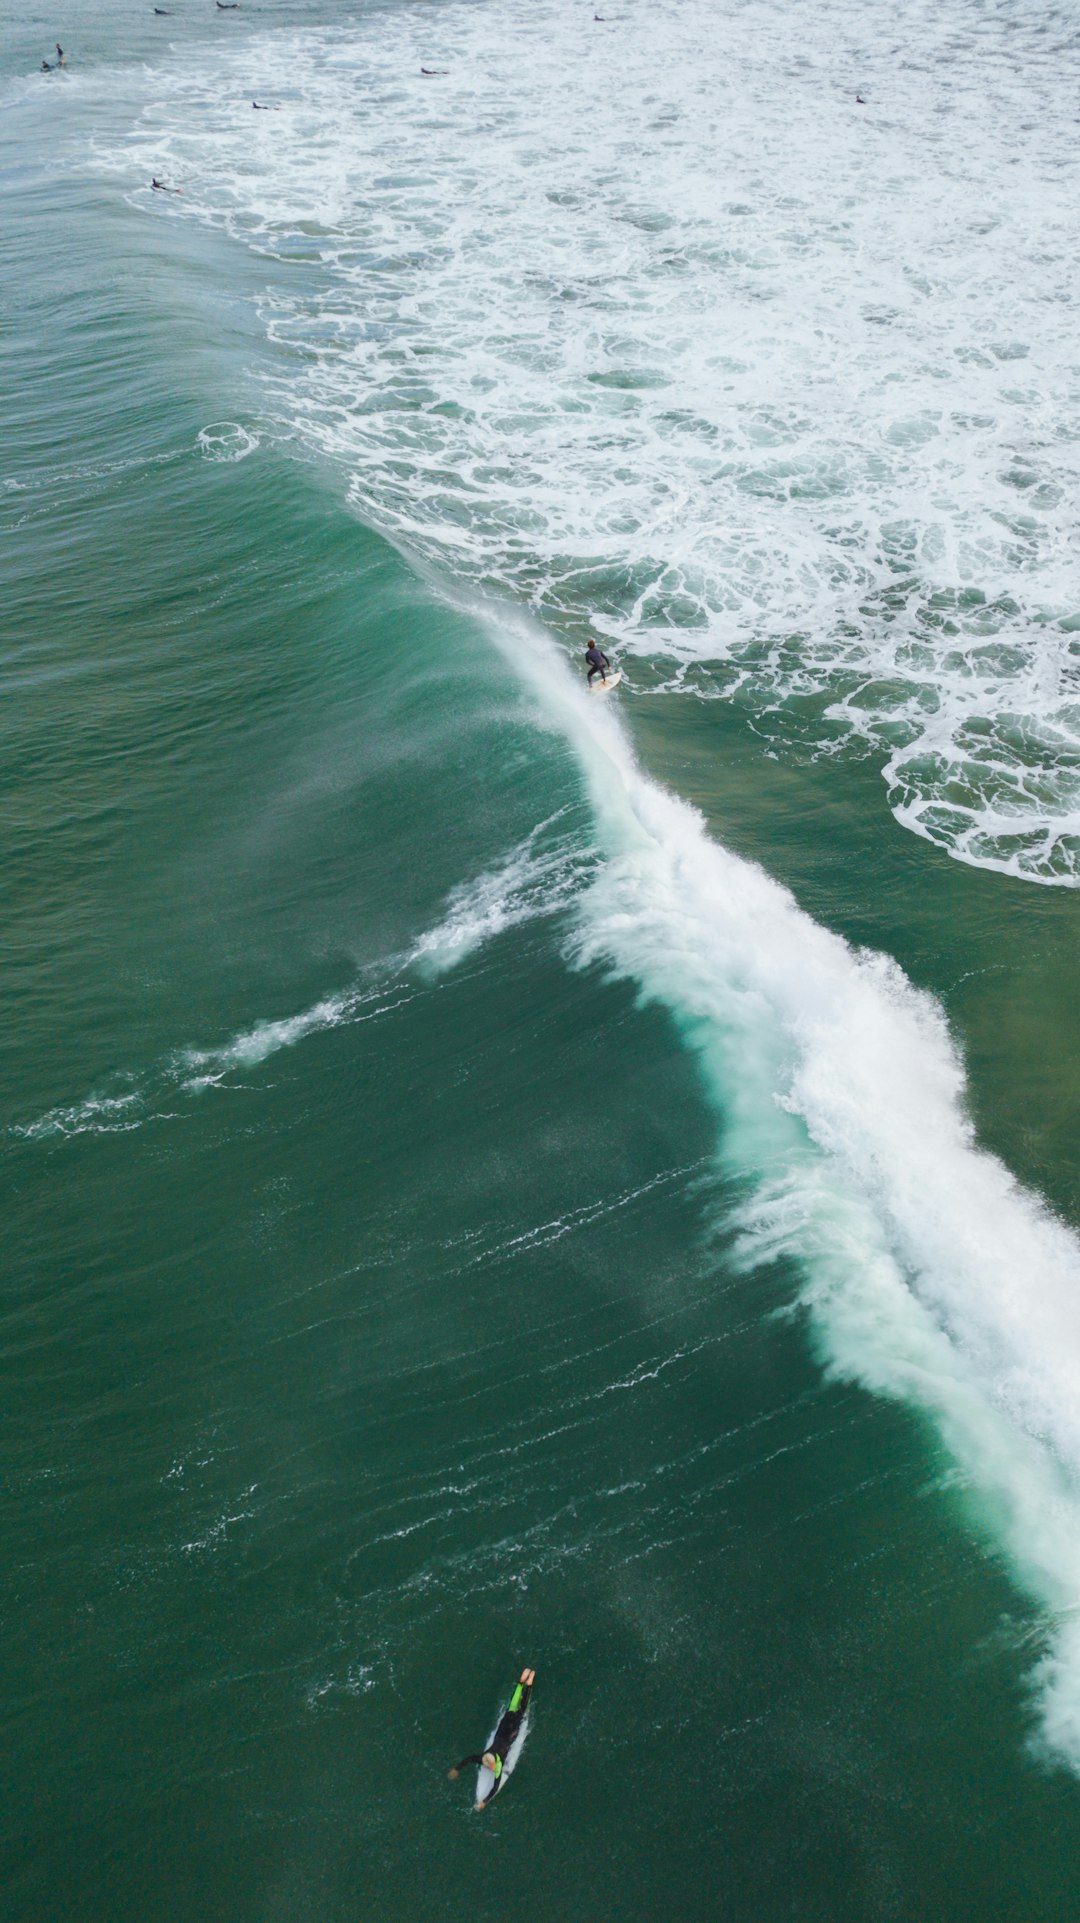 Surfing photo spot Sydney Bondi